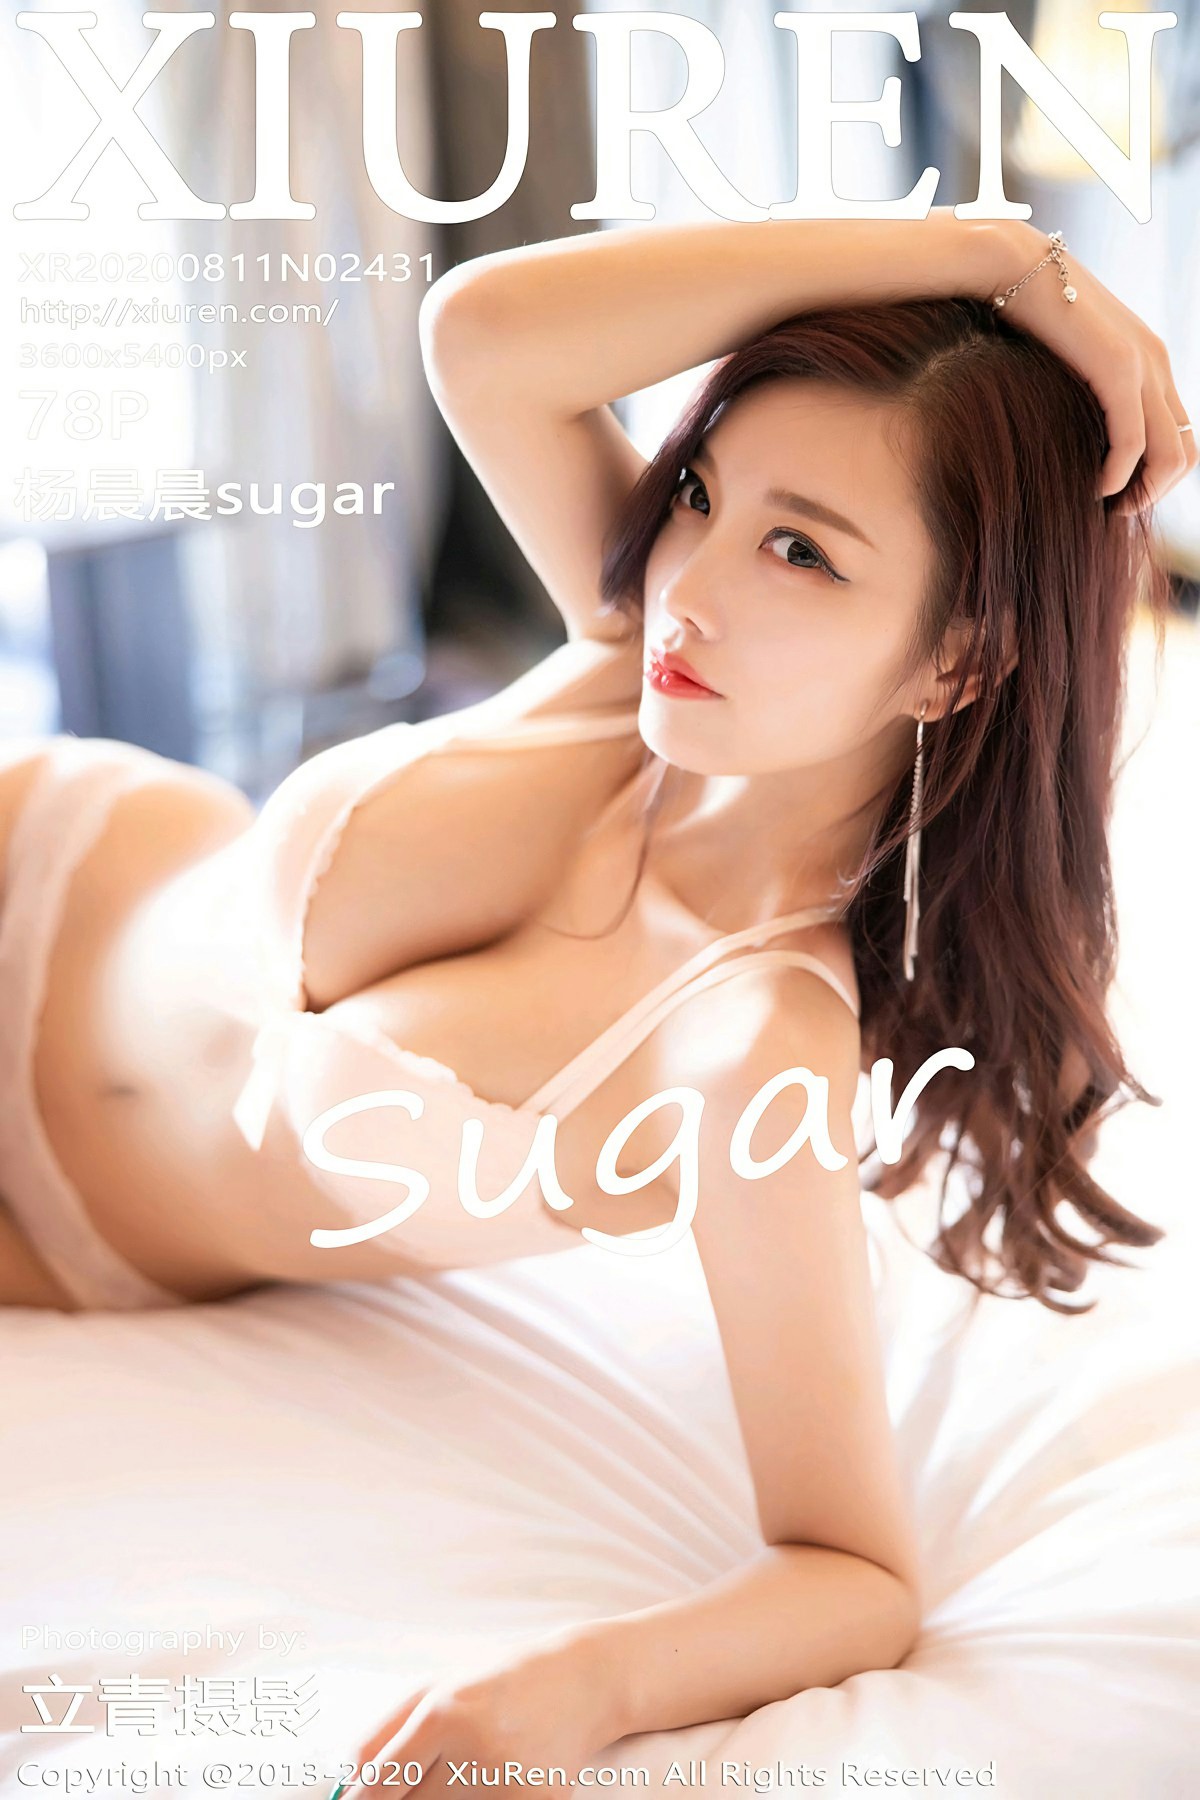 [XiuRen秀人网] 2020.08.11 No.2431 杨晨晨sugar